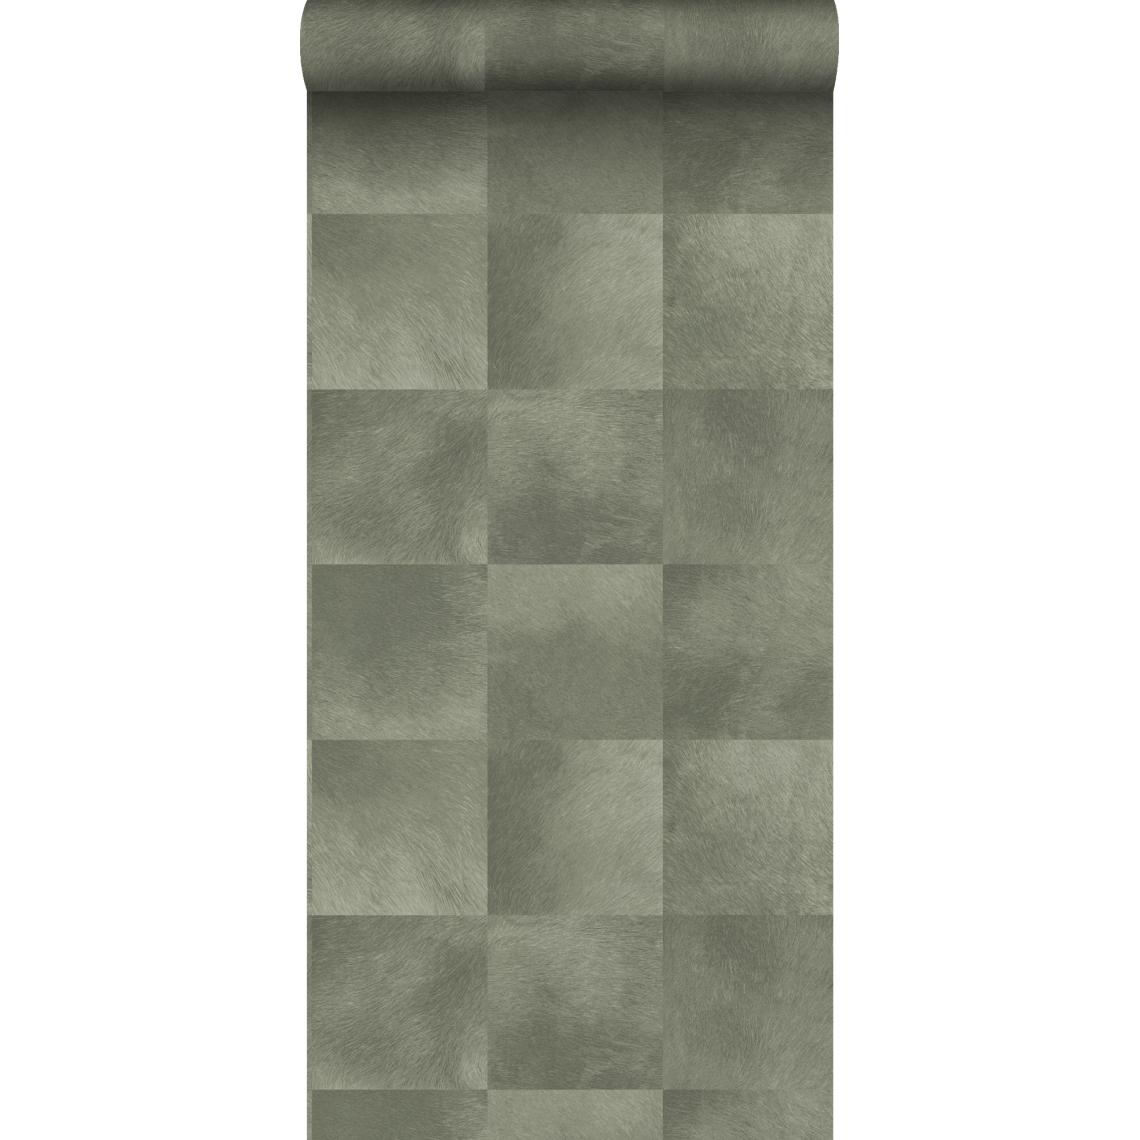 Origin - Origin papier peint texture de peau d'animal gris pâle - 347797 - 0.53 x 10.05 m - Papier peint